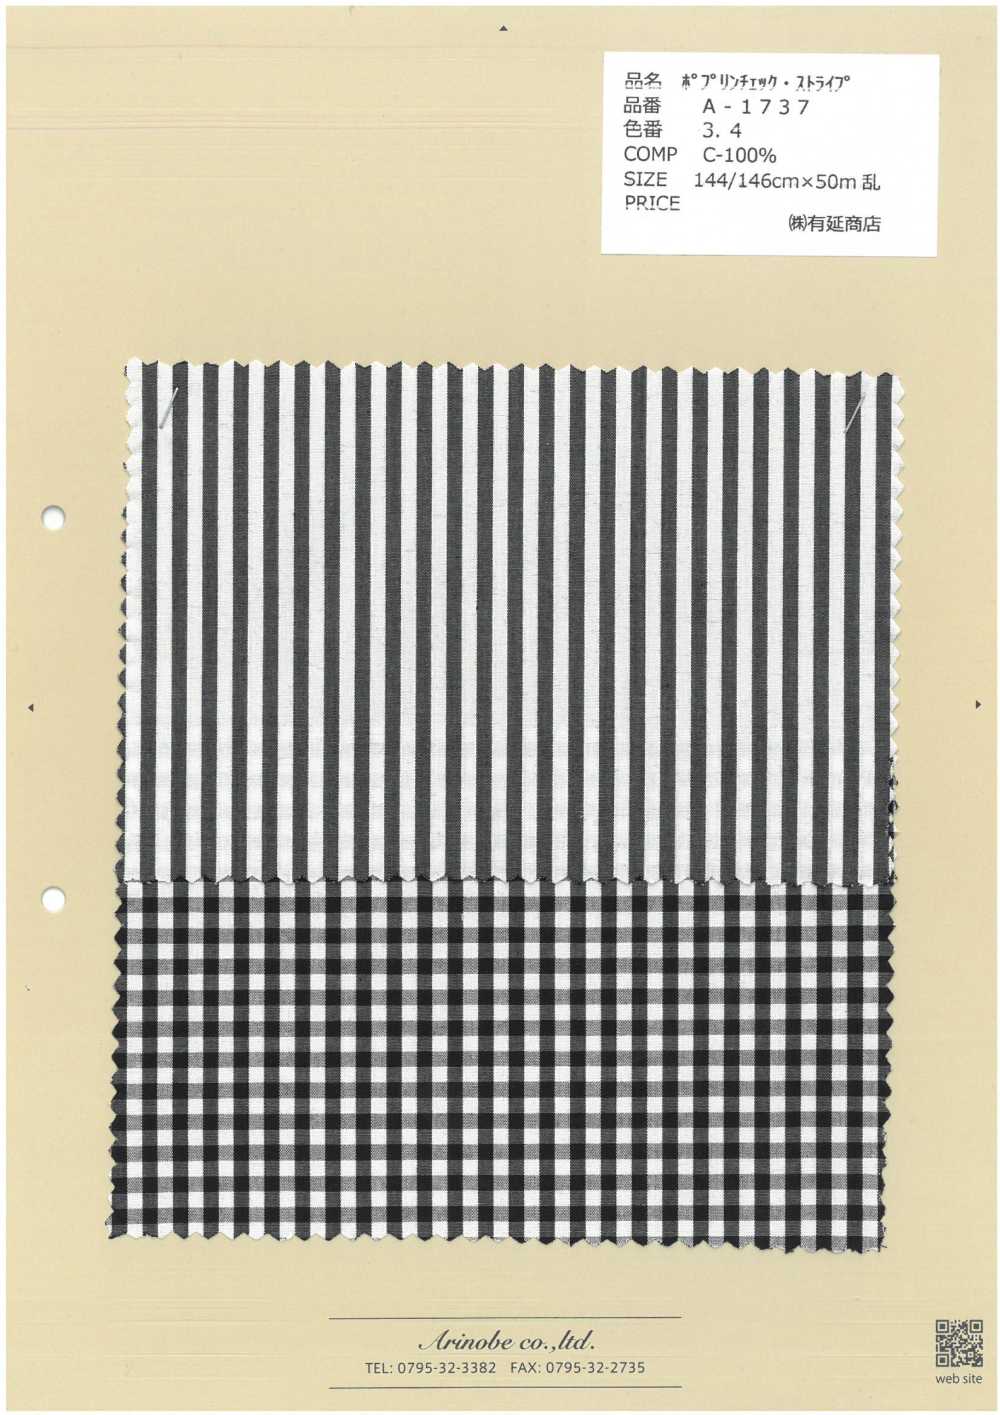 A-1737 Poplin Check Stripe[Textile / Fabric] ARINOBE CO., LTD.